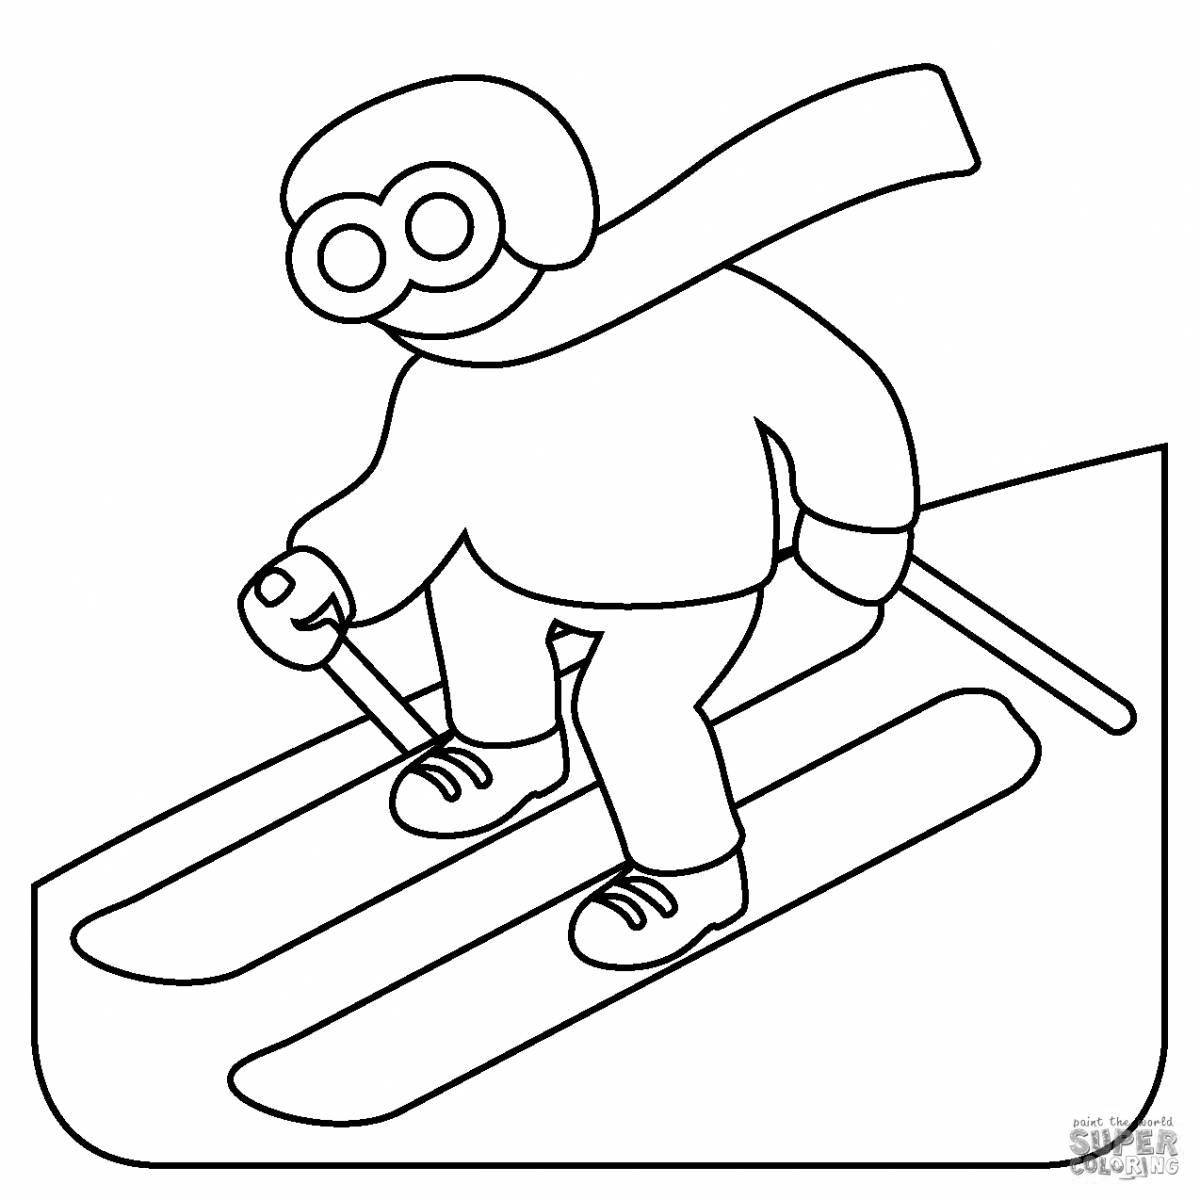 Динамичная раскраска лыжника для детей 6-7 лет